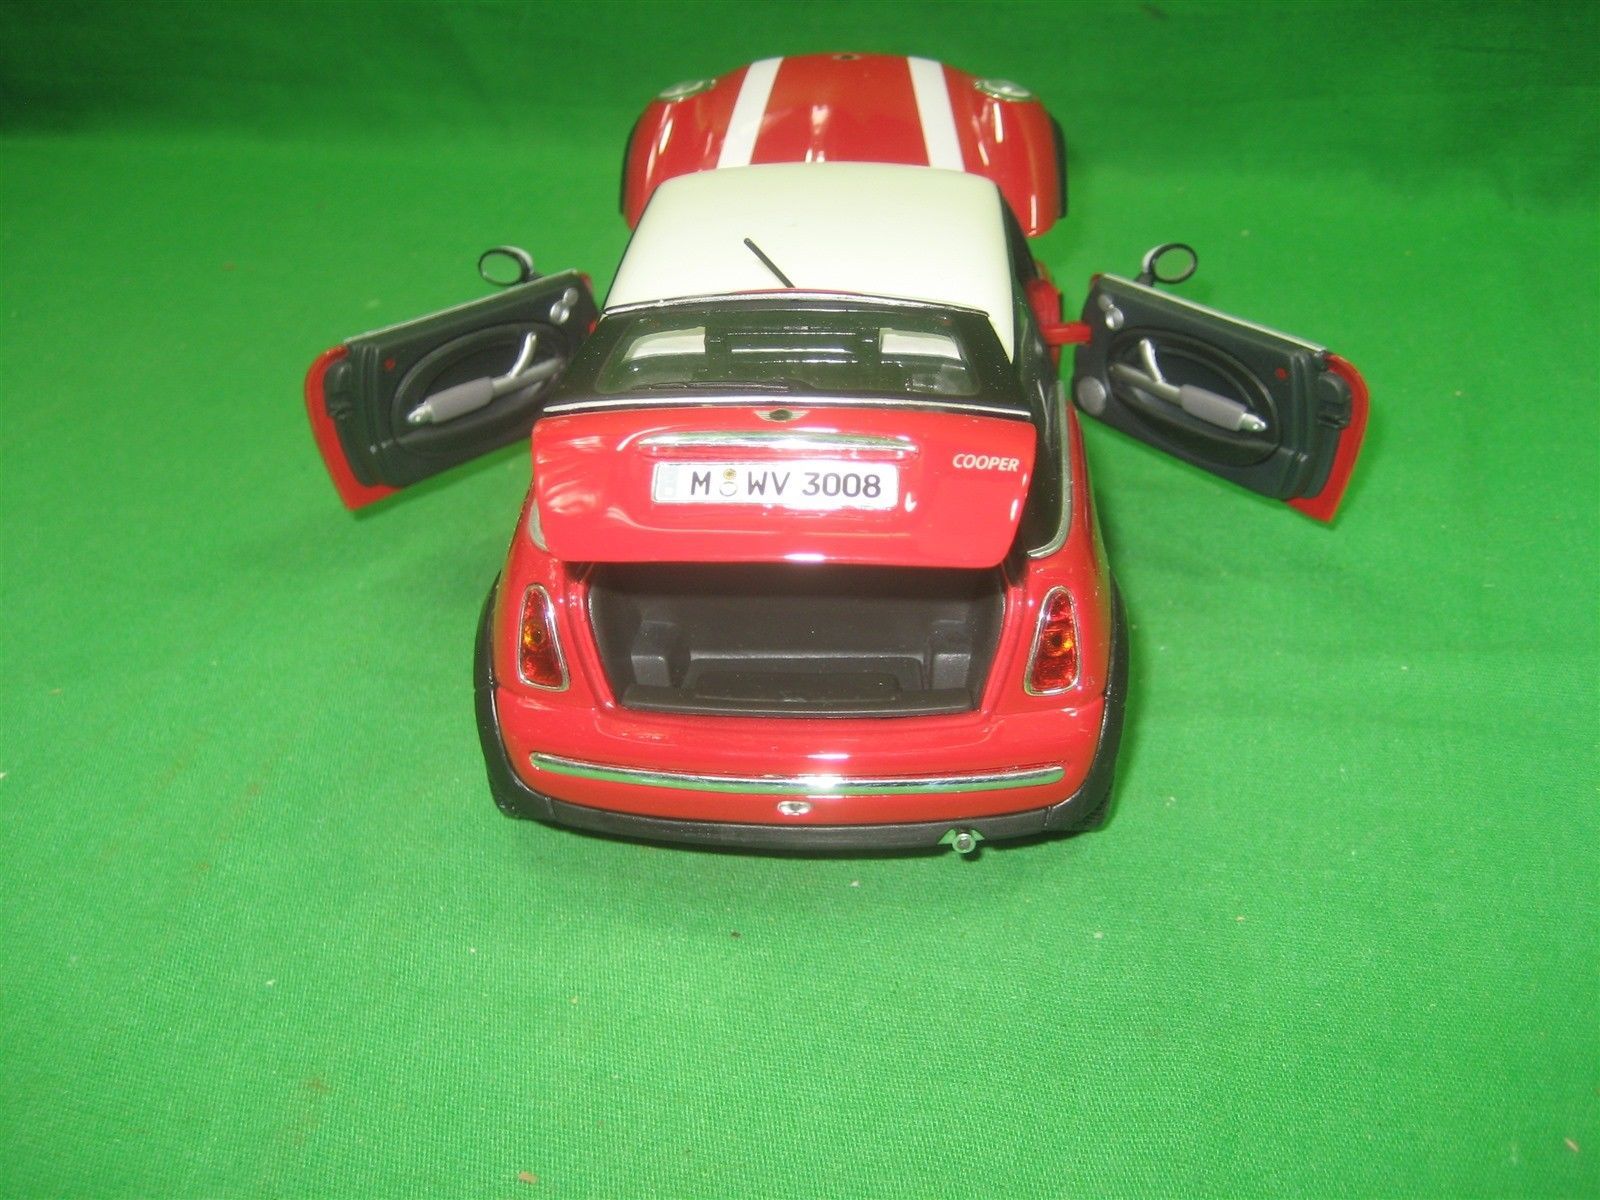 Maisto 2 Door Hard Top Mini Cooper Toy Car And 28 Similar Items Images, Photos, Reviews